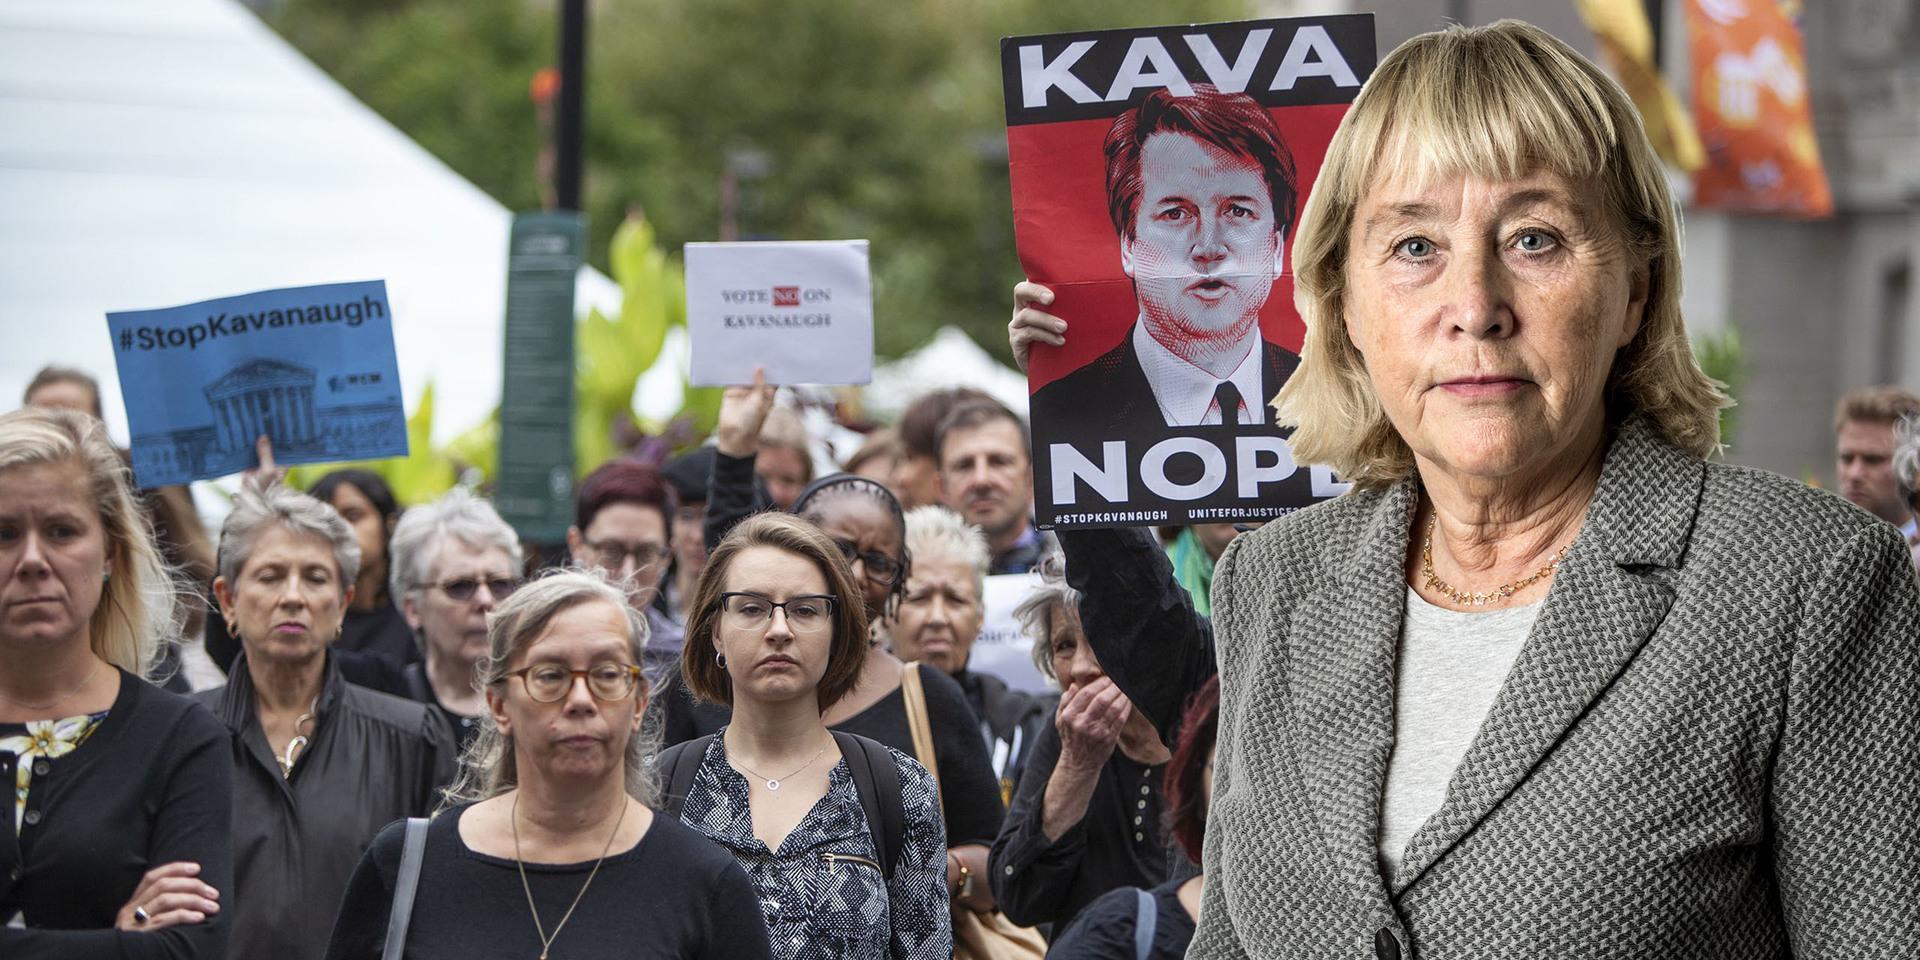 På måndagen hölls en demonstration till stöd för kvinnan som anklagar den tilltänkte domaren, Brett Kavanaugh, för sexuellt övergrepp.